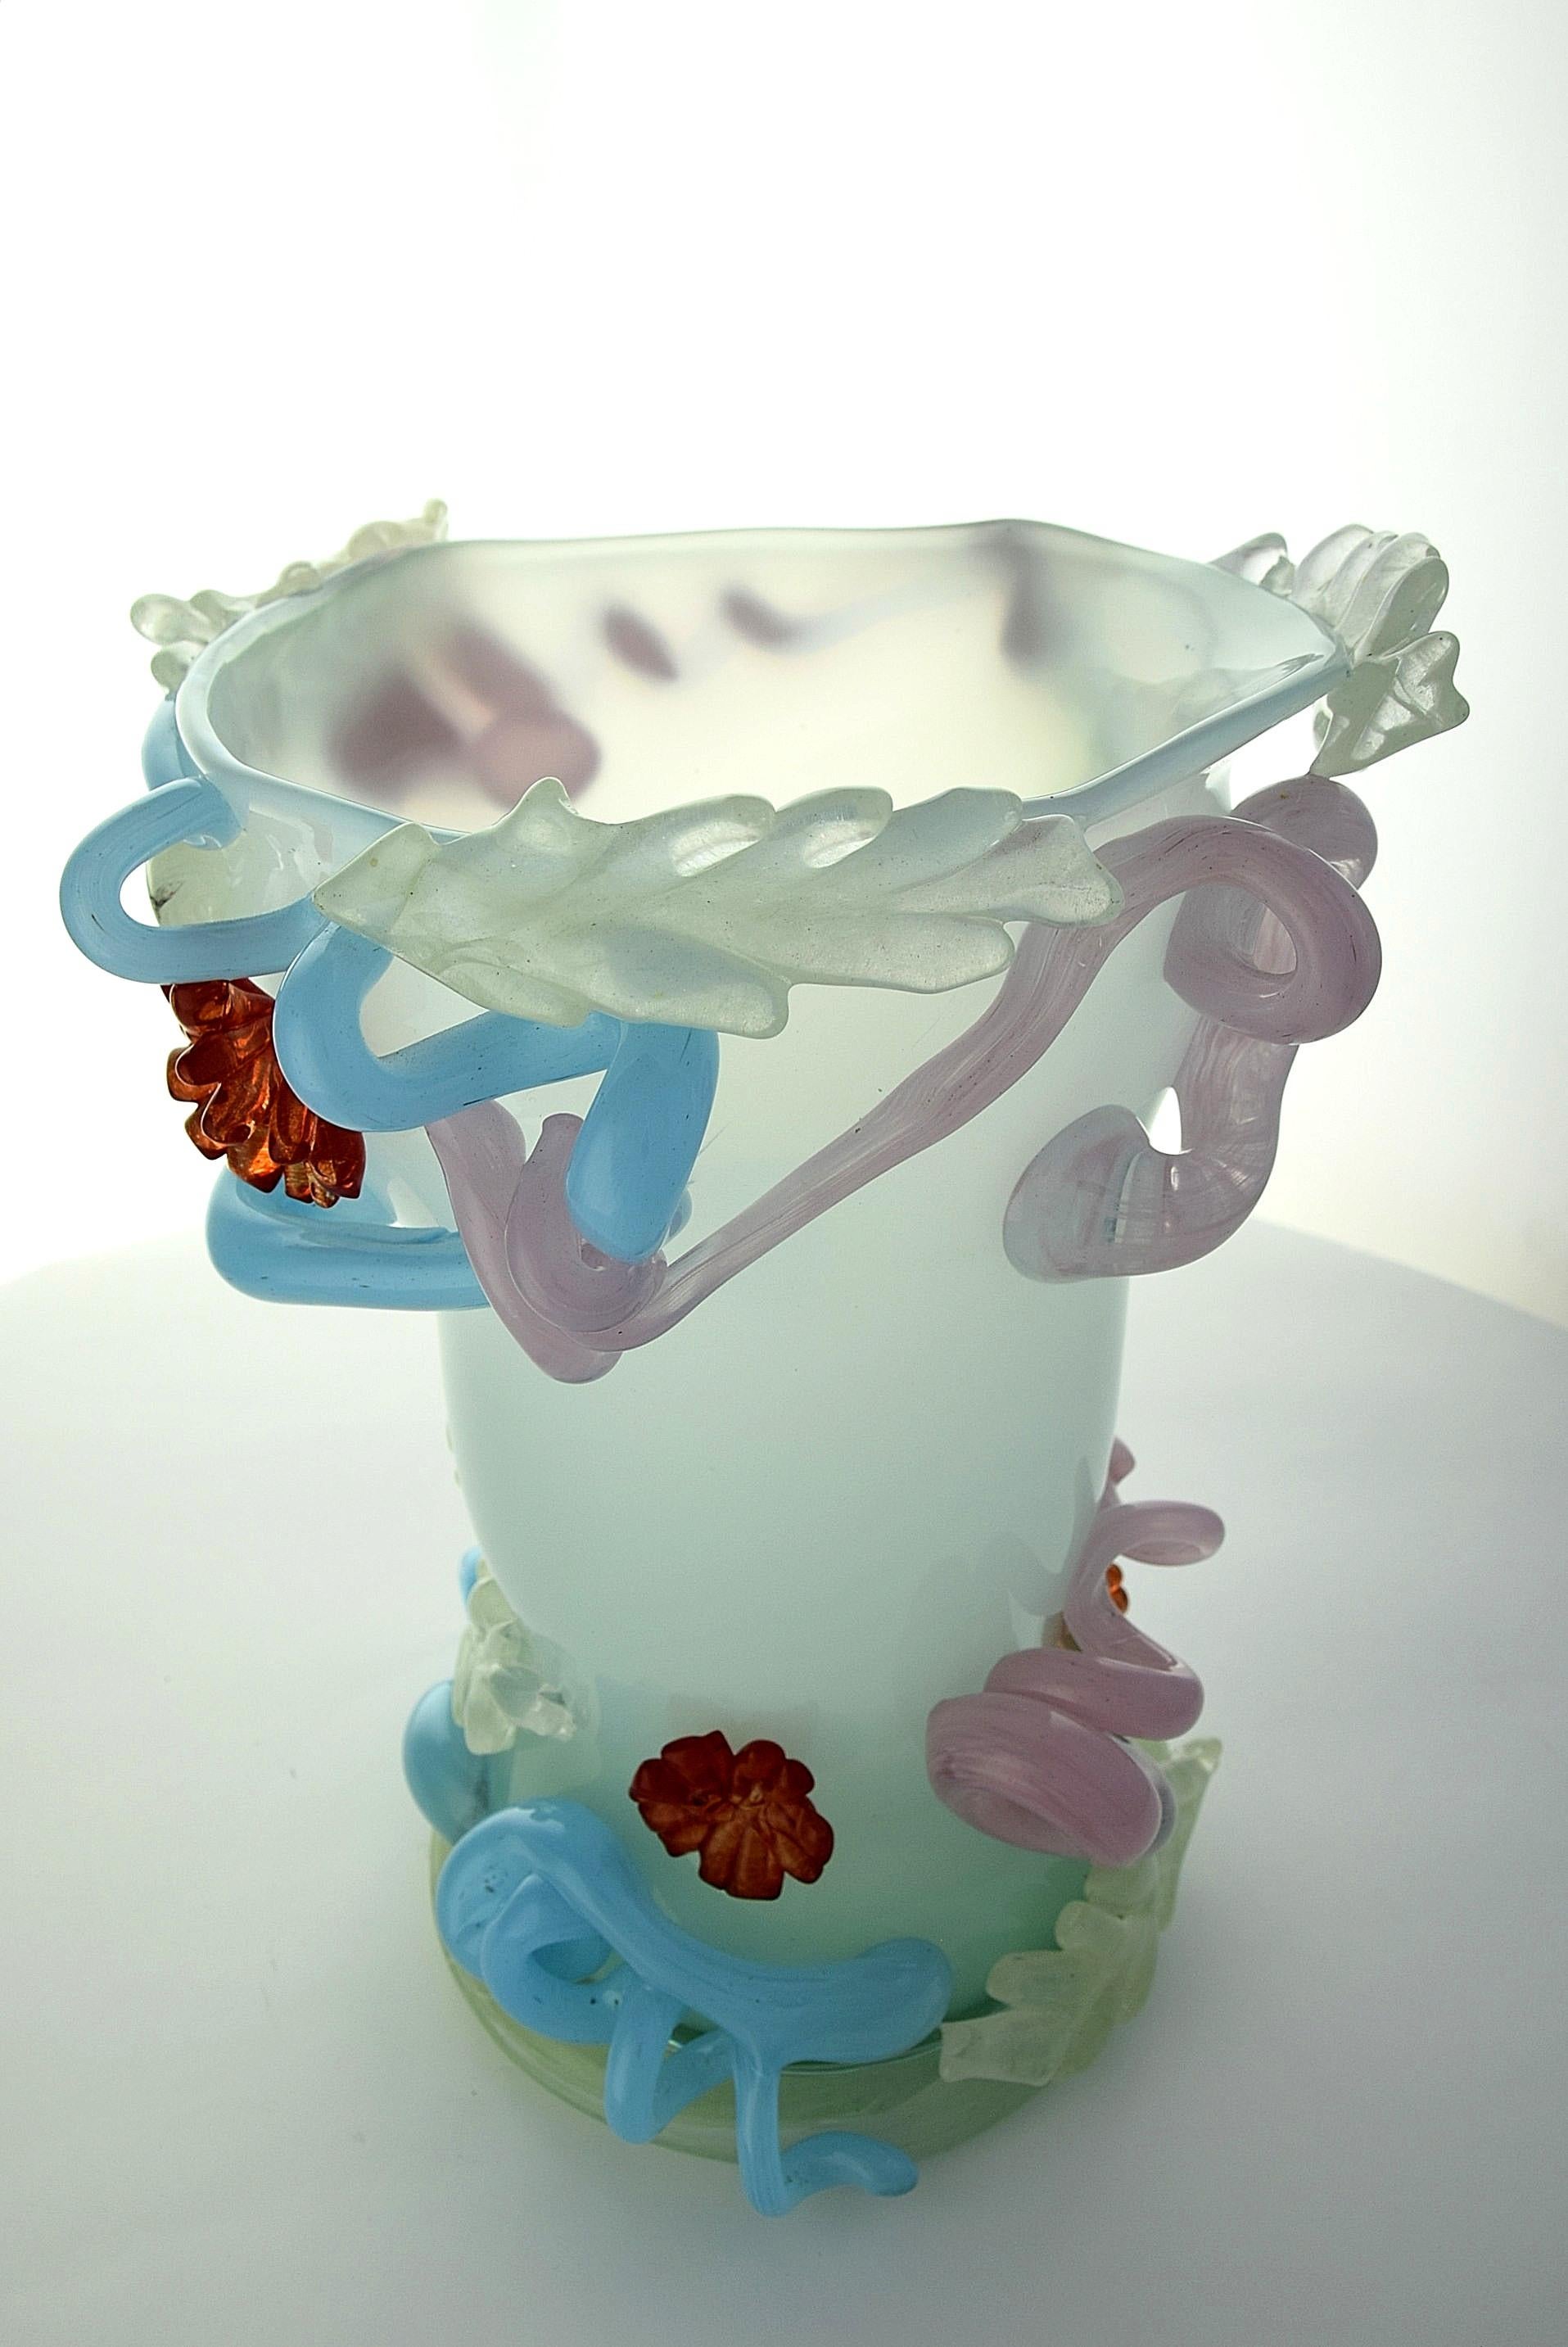 Contemporary Bernard Heesen Art Glass Vase the Japanese Way, 2018